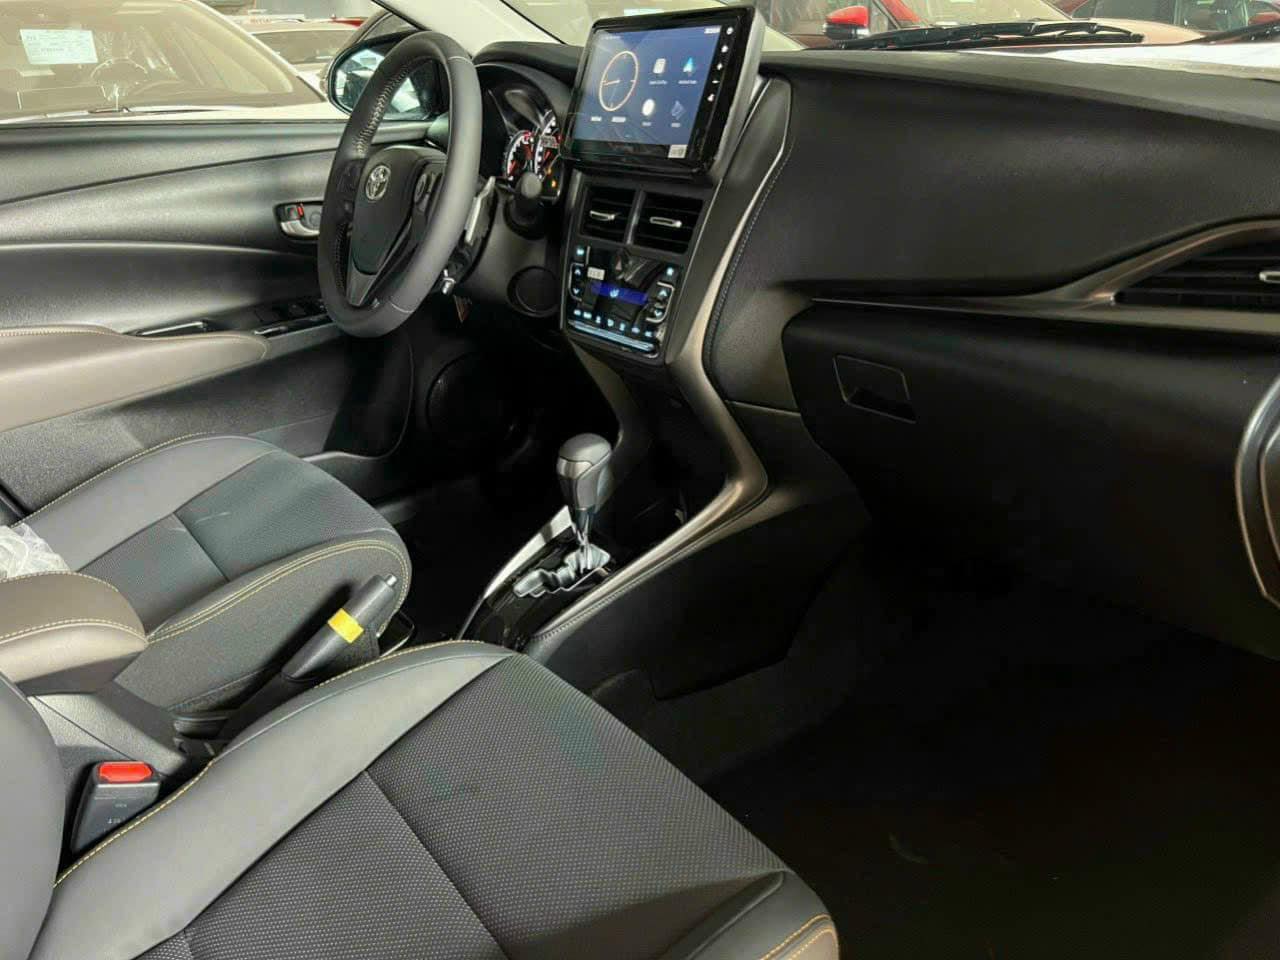 Thêm ảnh Toyota Vios 2023 tại đại lý: Liệu có lấy lại được ngôi vương doanh số? toyota-vios-2023-2-1.jpg